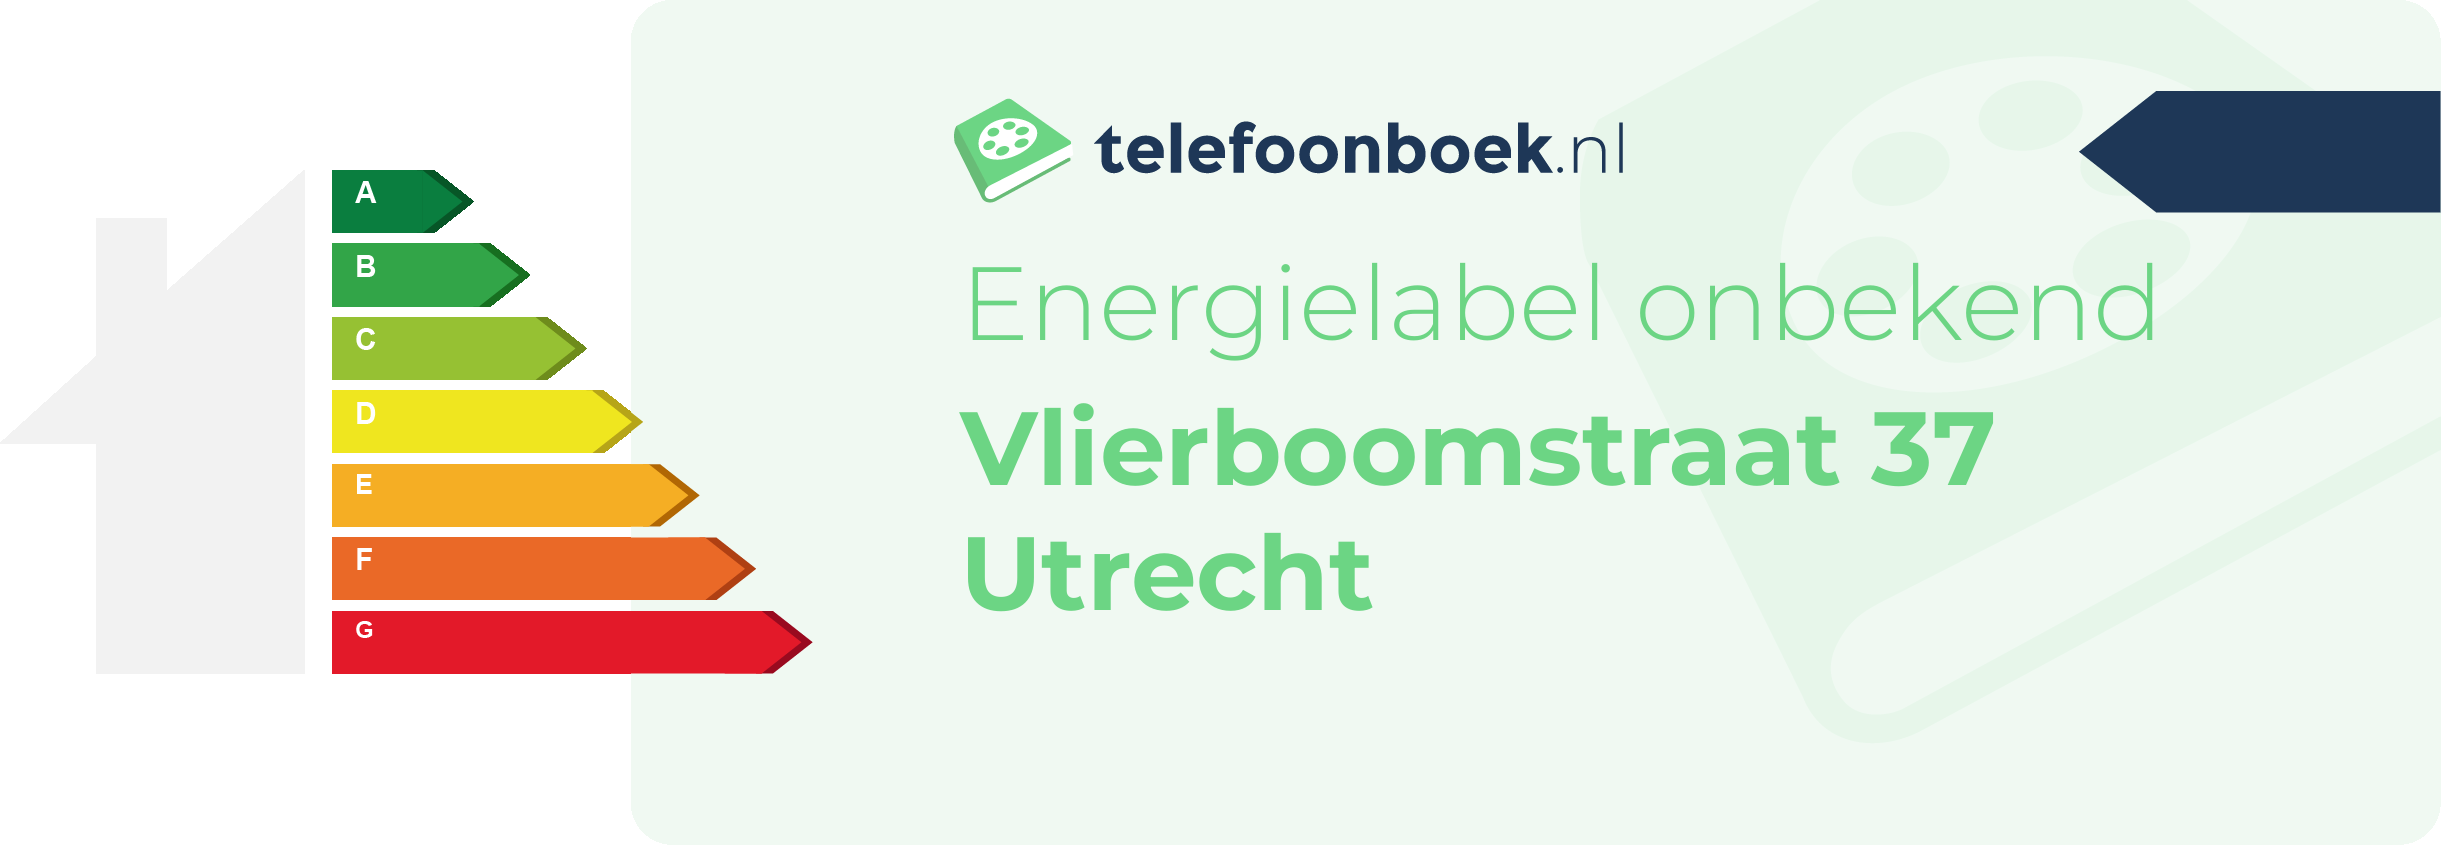 Energielabel Vlierboomstraat 37 Utrecht